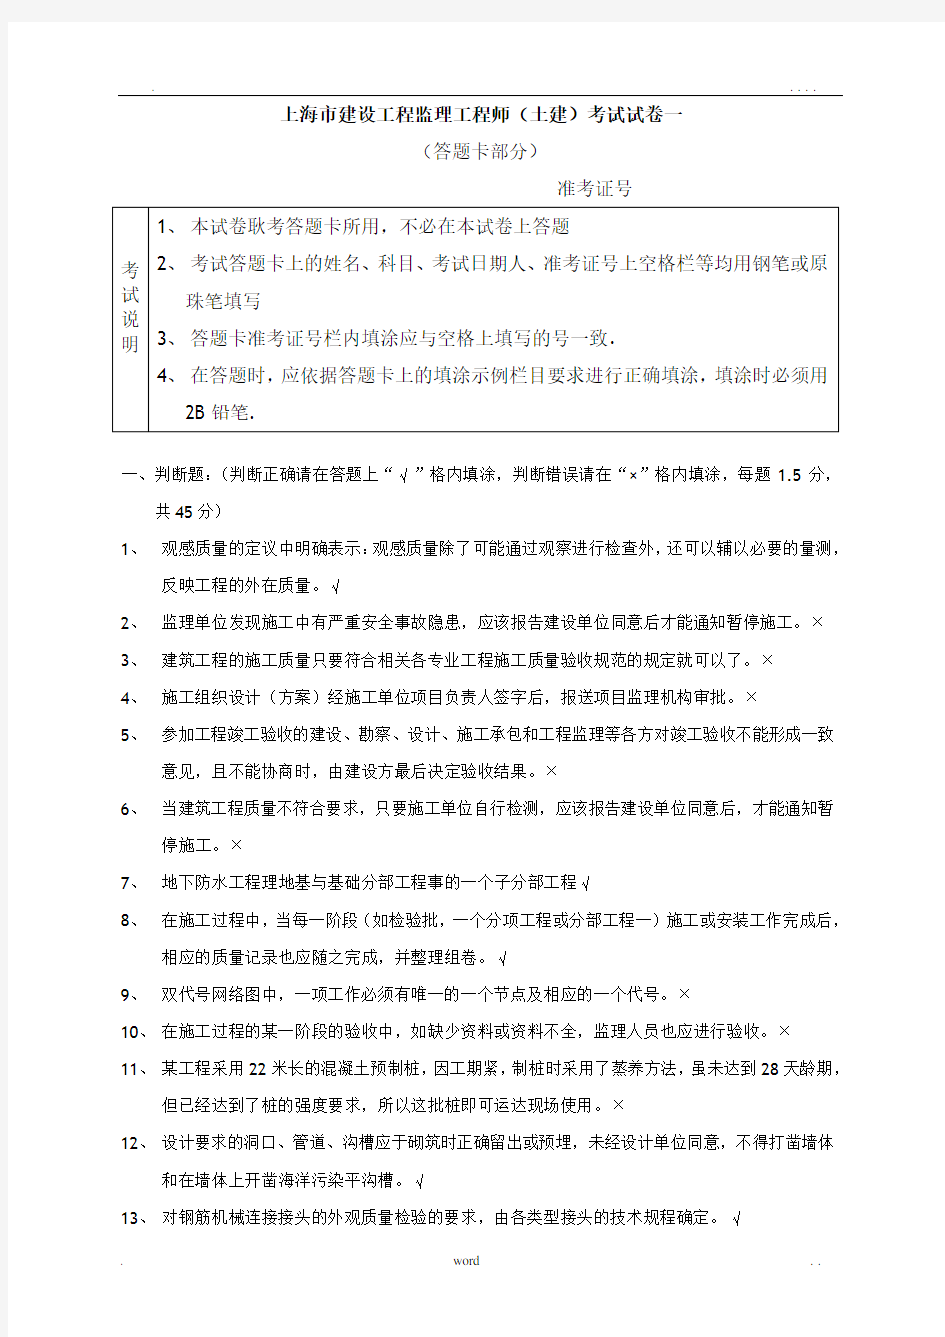 上海市建设工程监理工程师(土建)考试试卷一